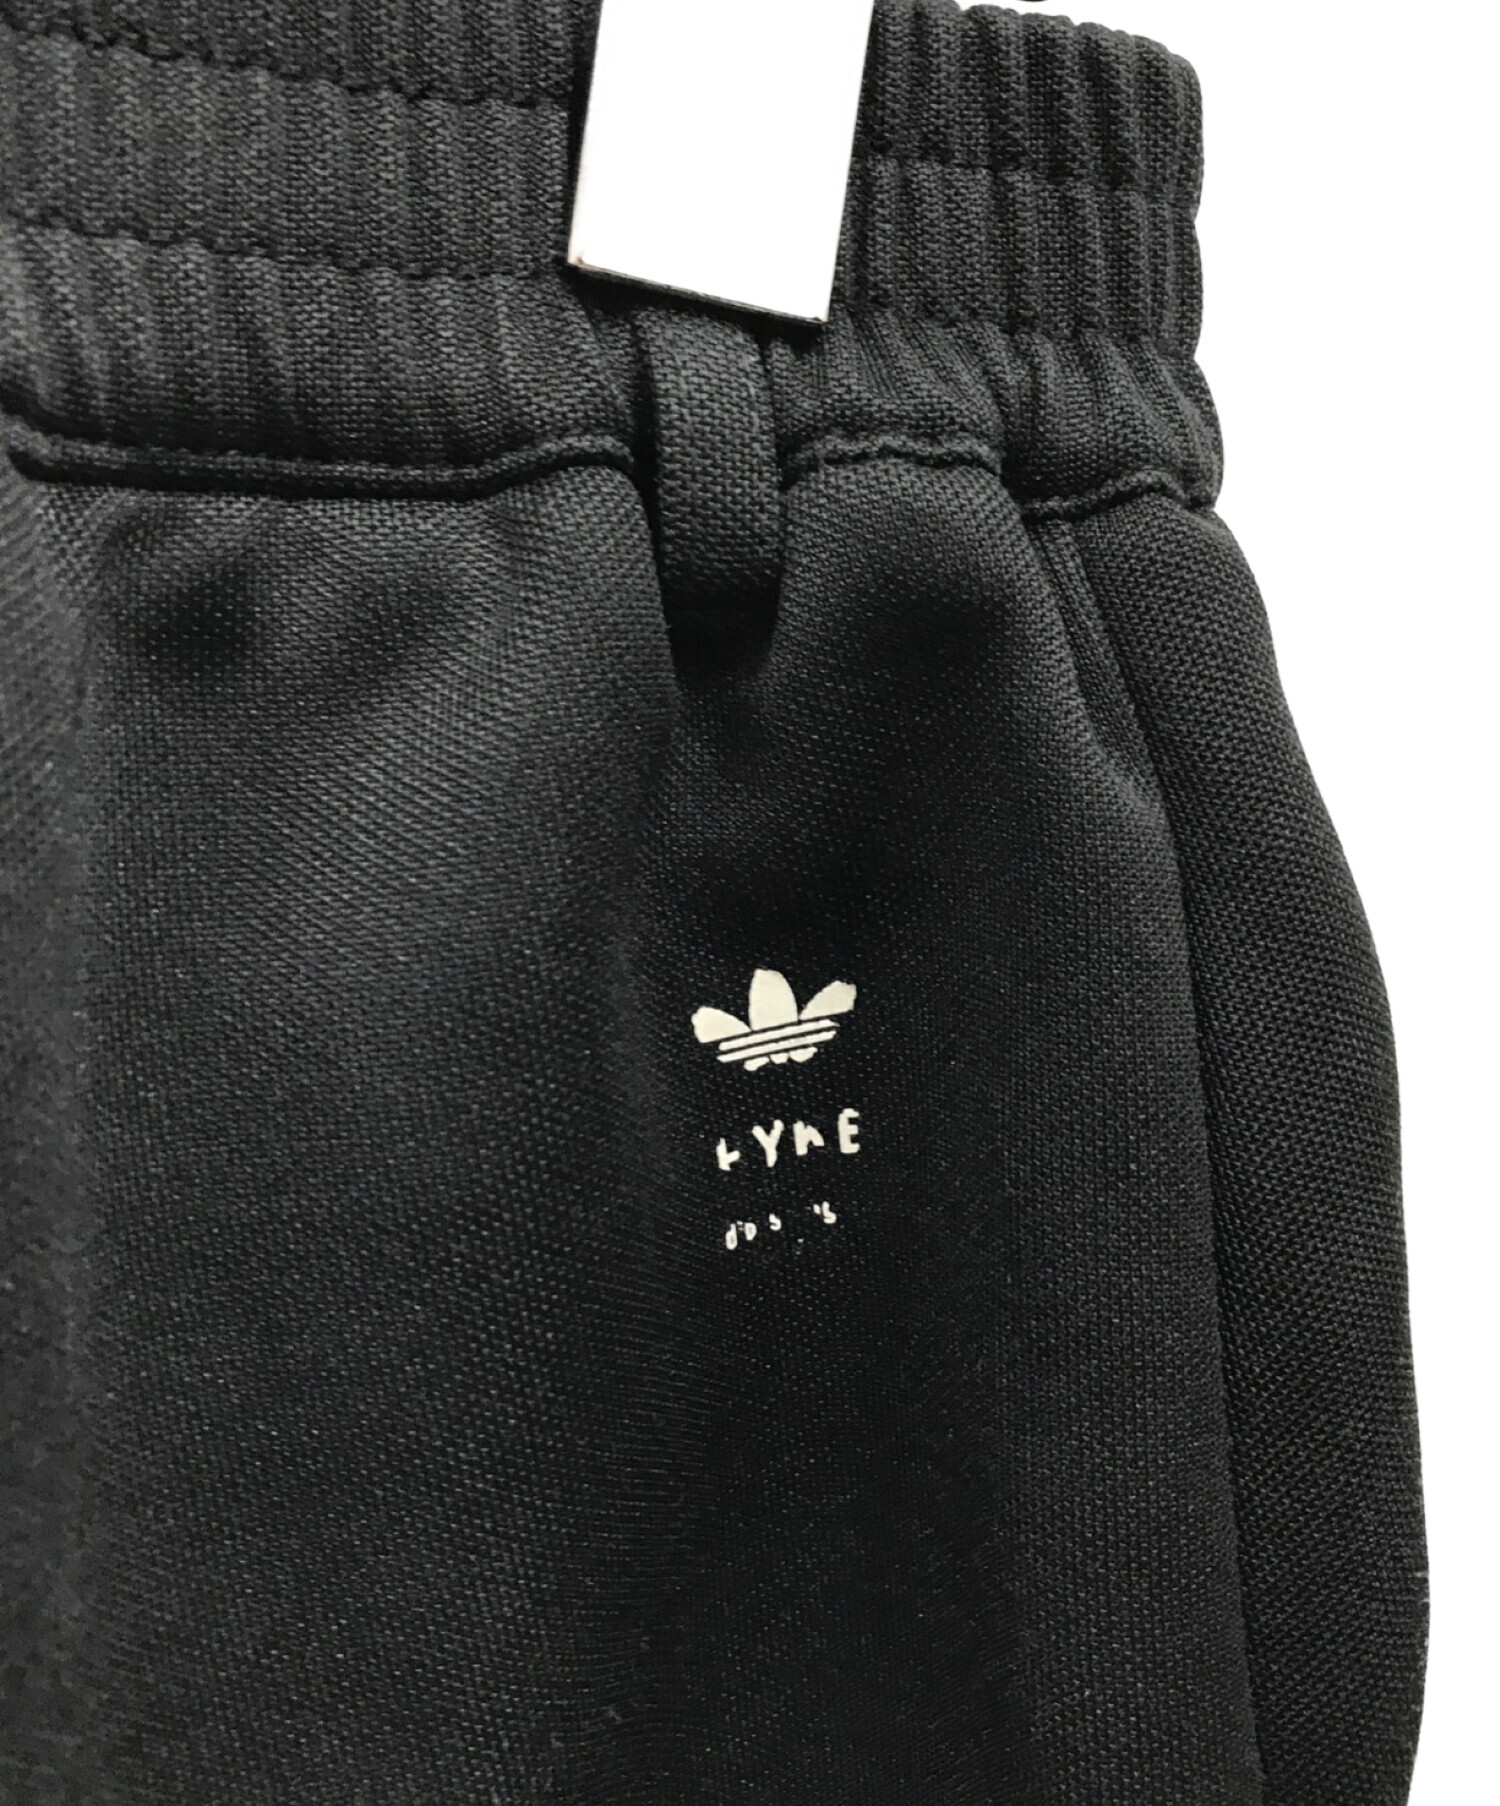 HYKE (ハイク) adidas (アディダス) センタープレスパンツ ブラック サイズ:OT